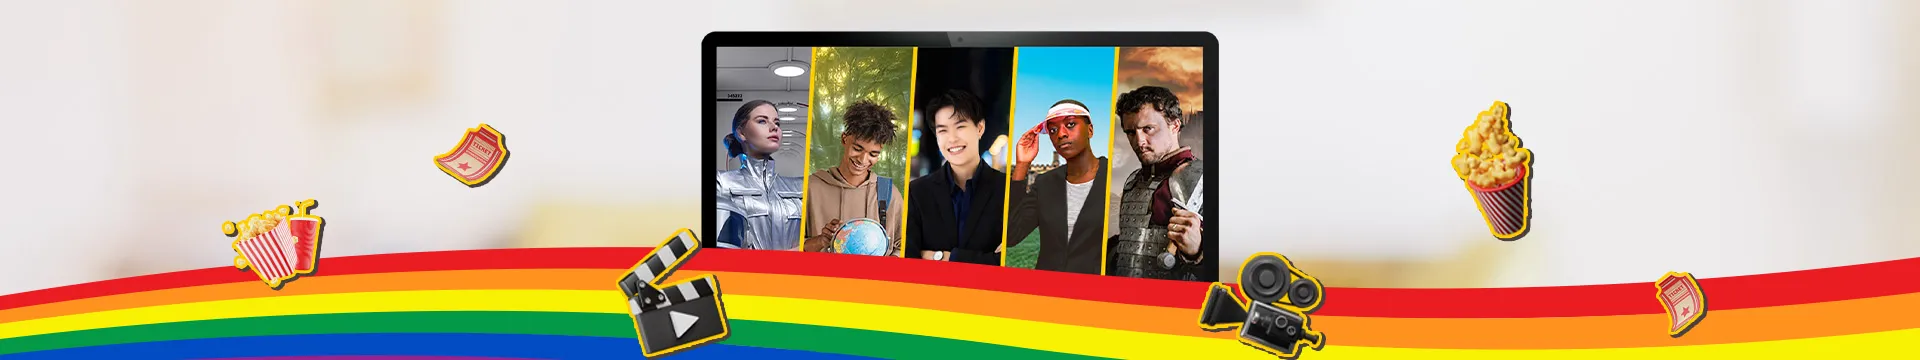 จากหน้าจอสู่ Iconic กับ 5 ตัวละคร LGBTQ ในโลกบันเทิง